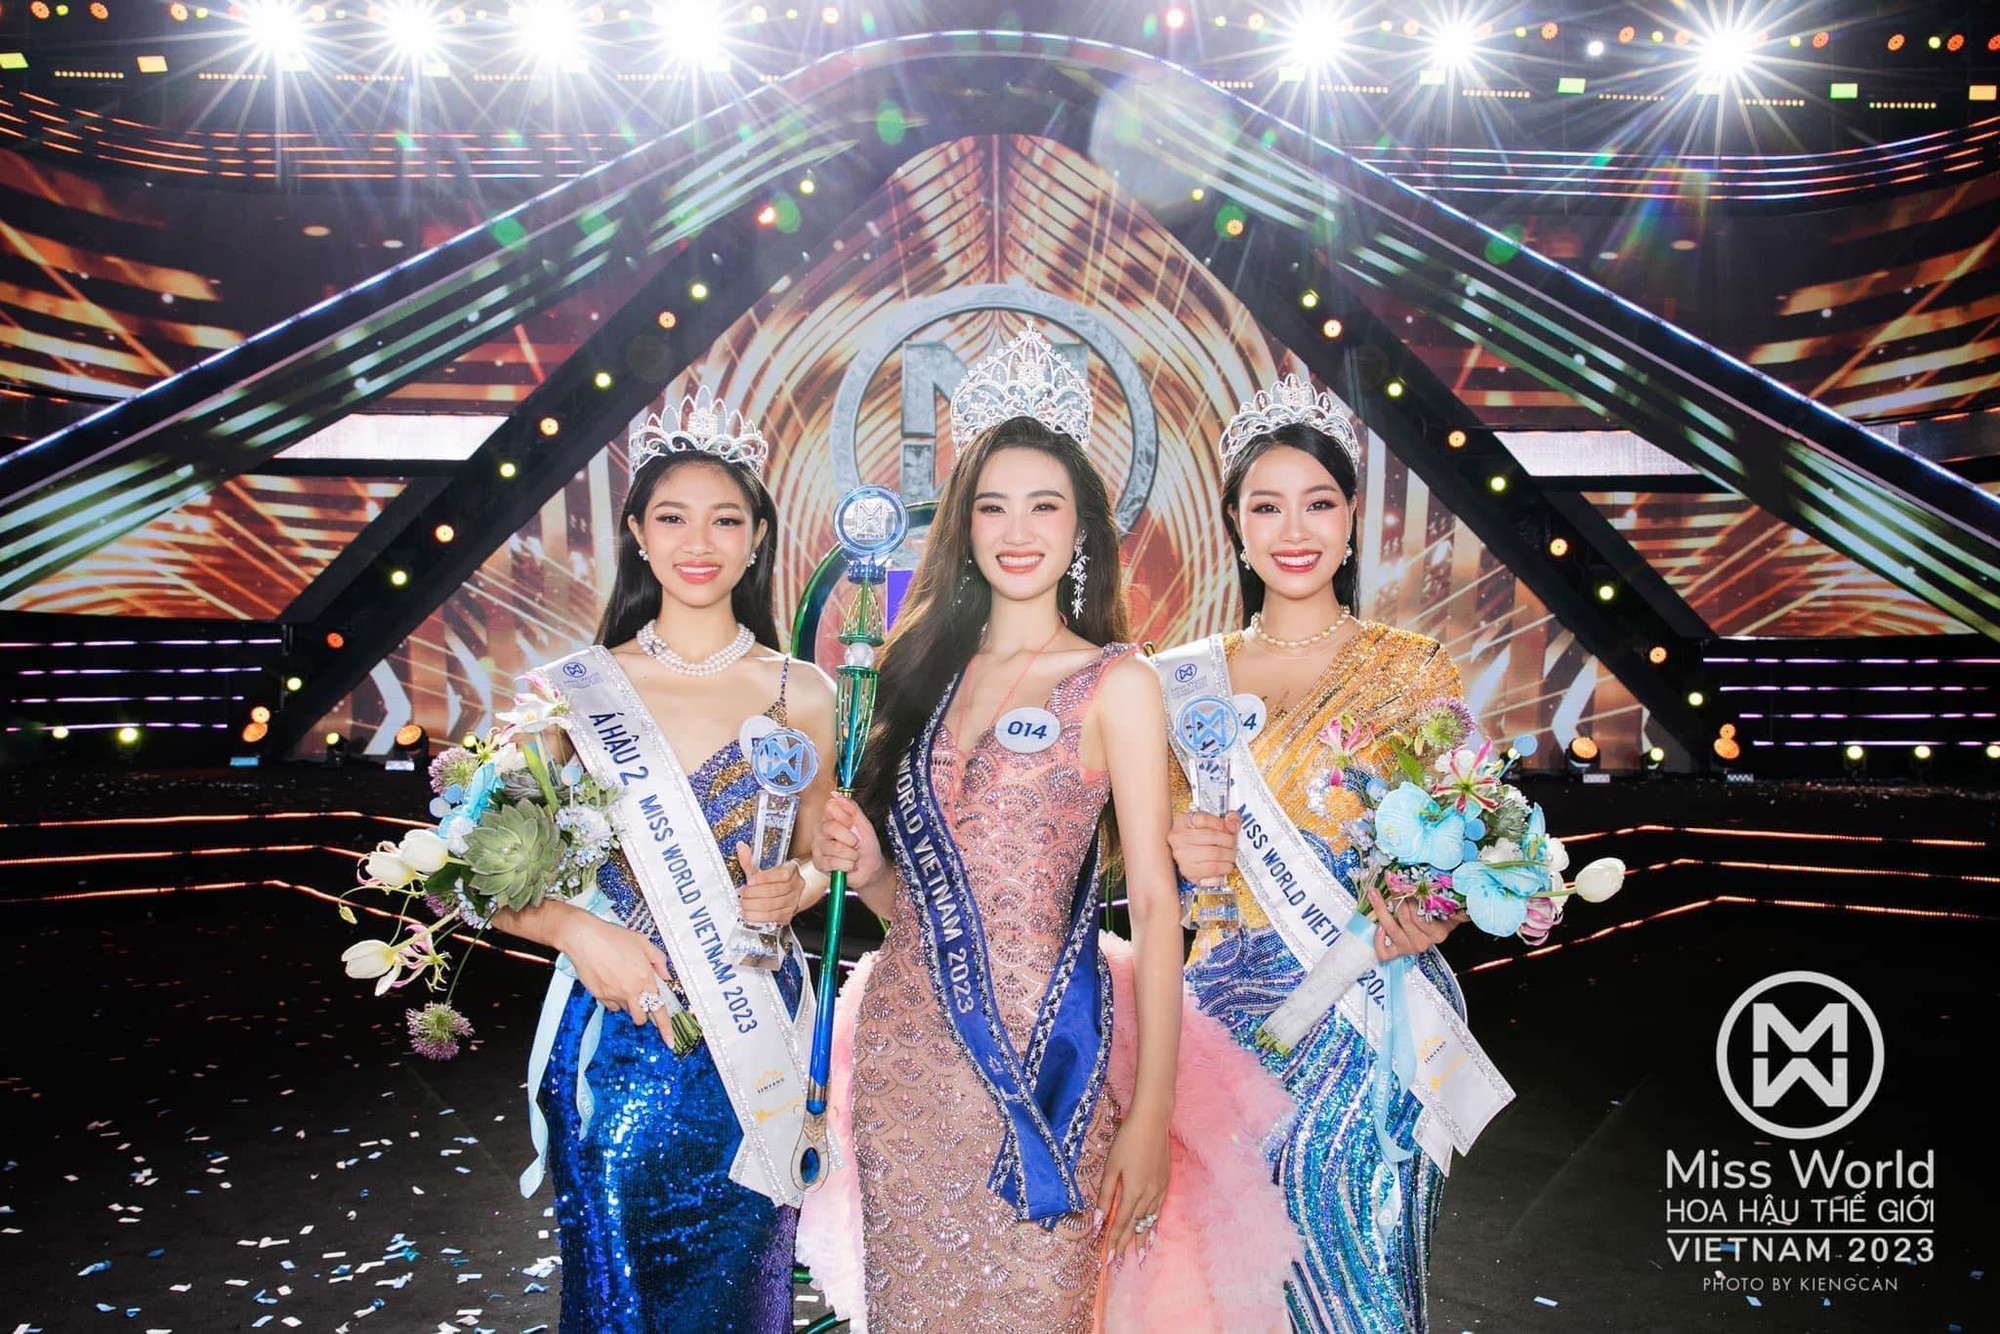 Tân Miss World Vietnam Huỳnh Trần Ý Nhi - Người đẹp tài sắc vẹn toàn - Ảnh 3.